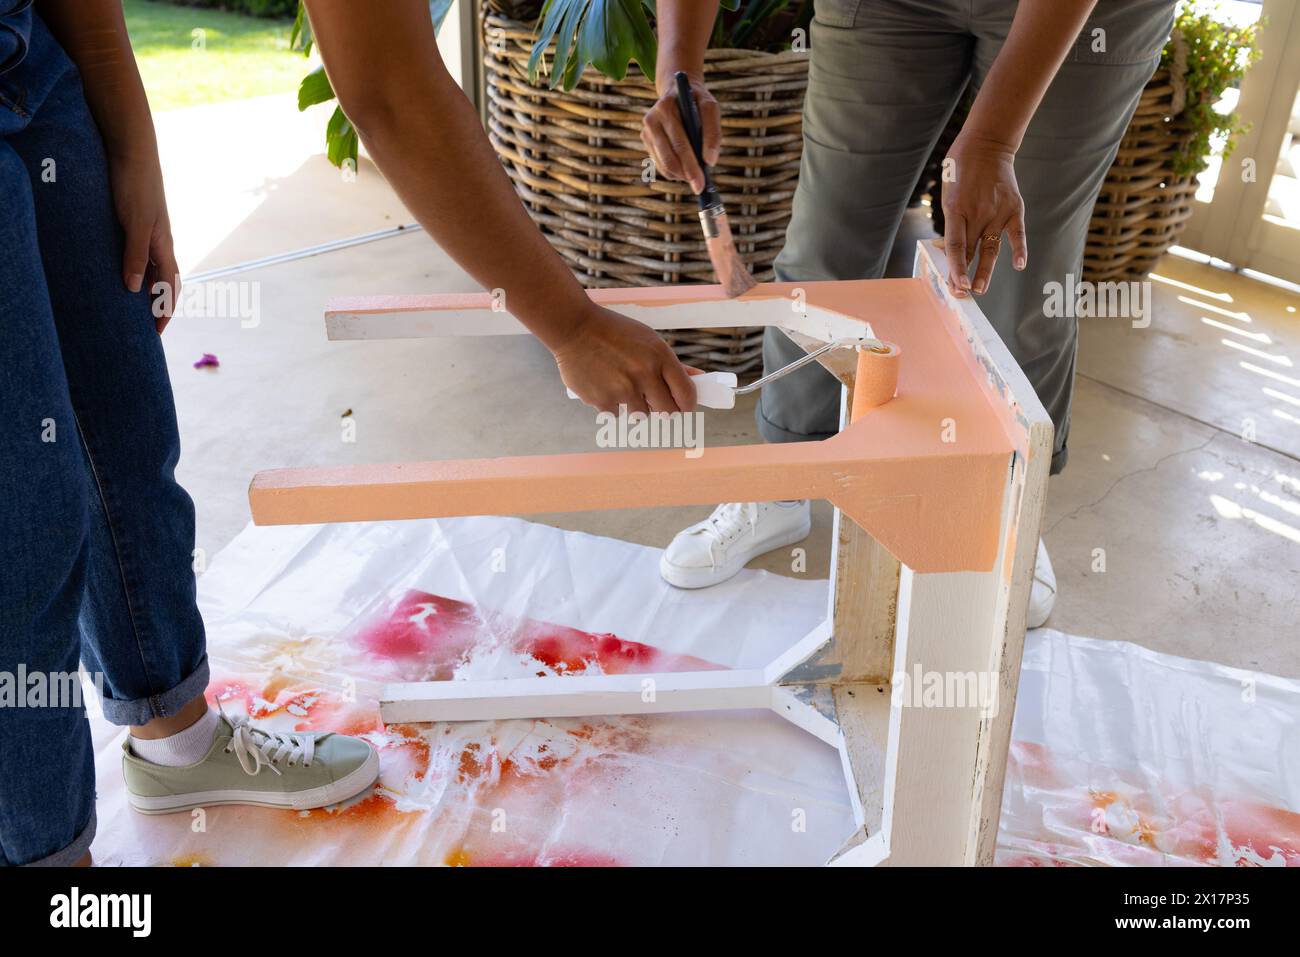 Madre birazziale e figlia adulta stanno dipingendo un tavolo insieme a casa come un progetto di upcycling. Entrambi indossano abiti casual, la madre ha il cu corto Foto Stock